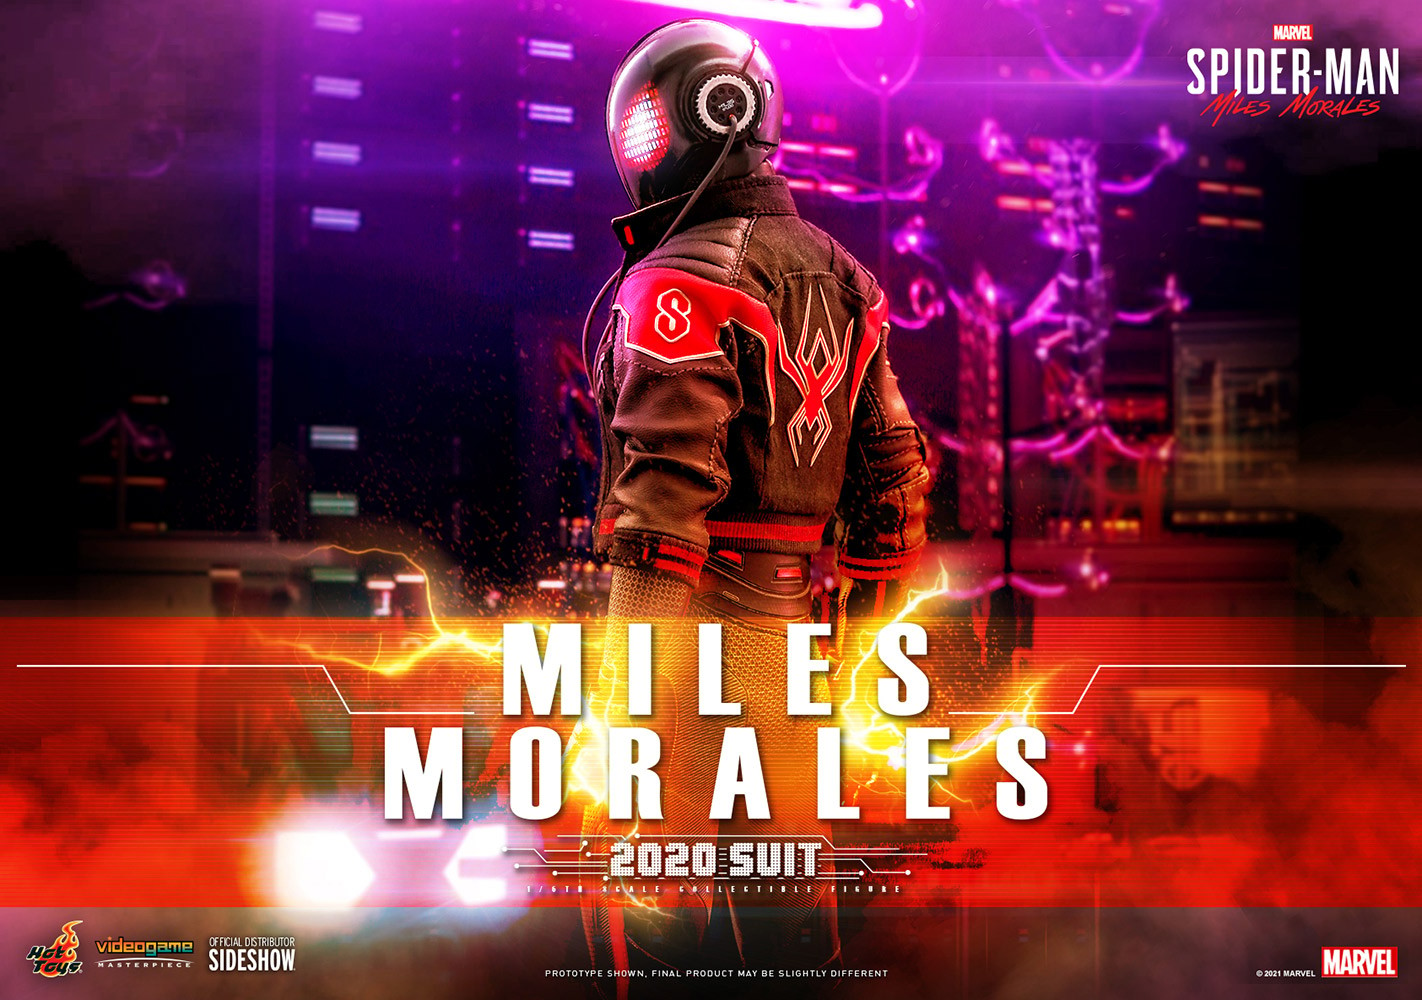 Miles Morales (2020 Suit)- Prototype Shown